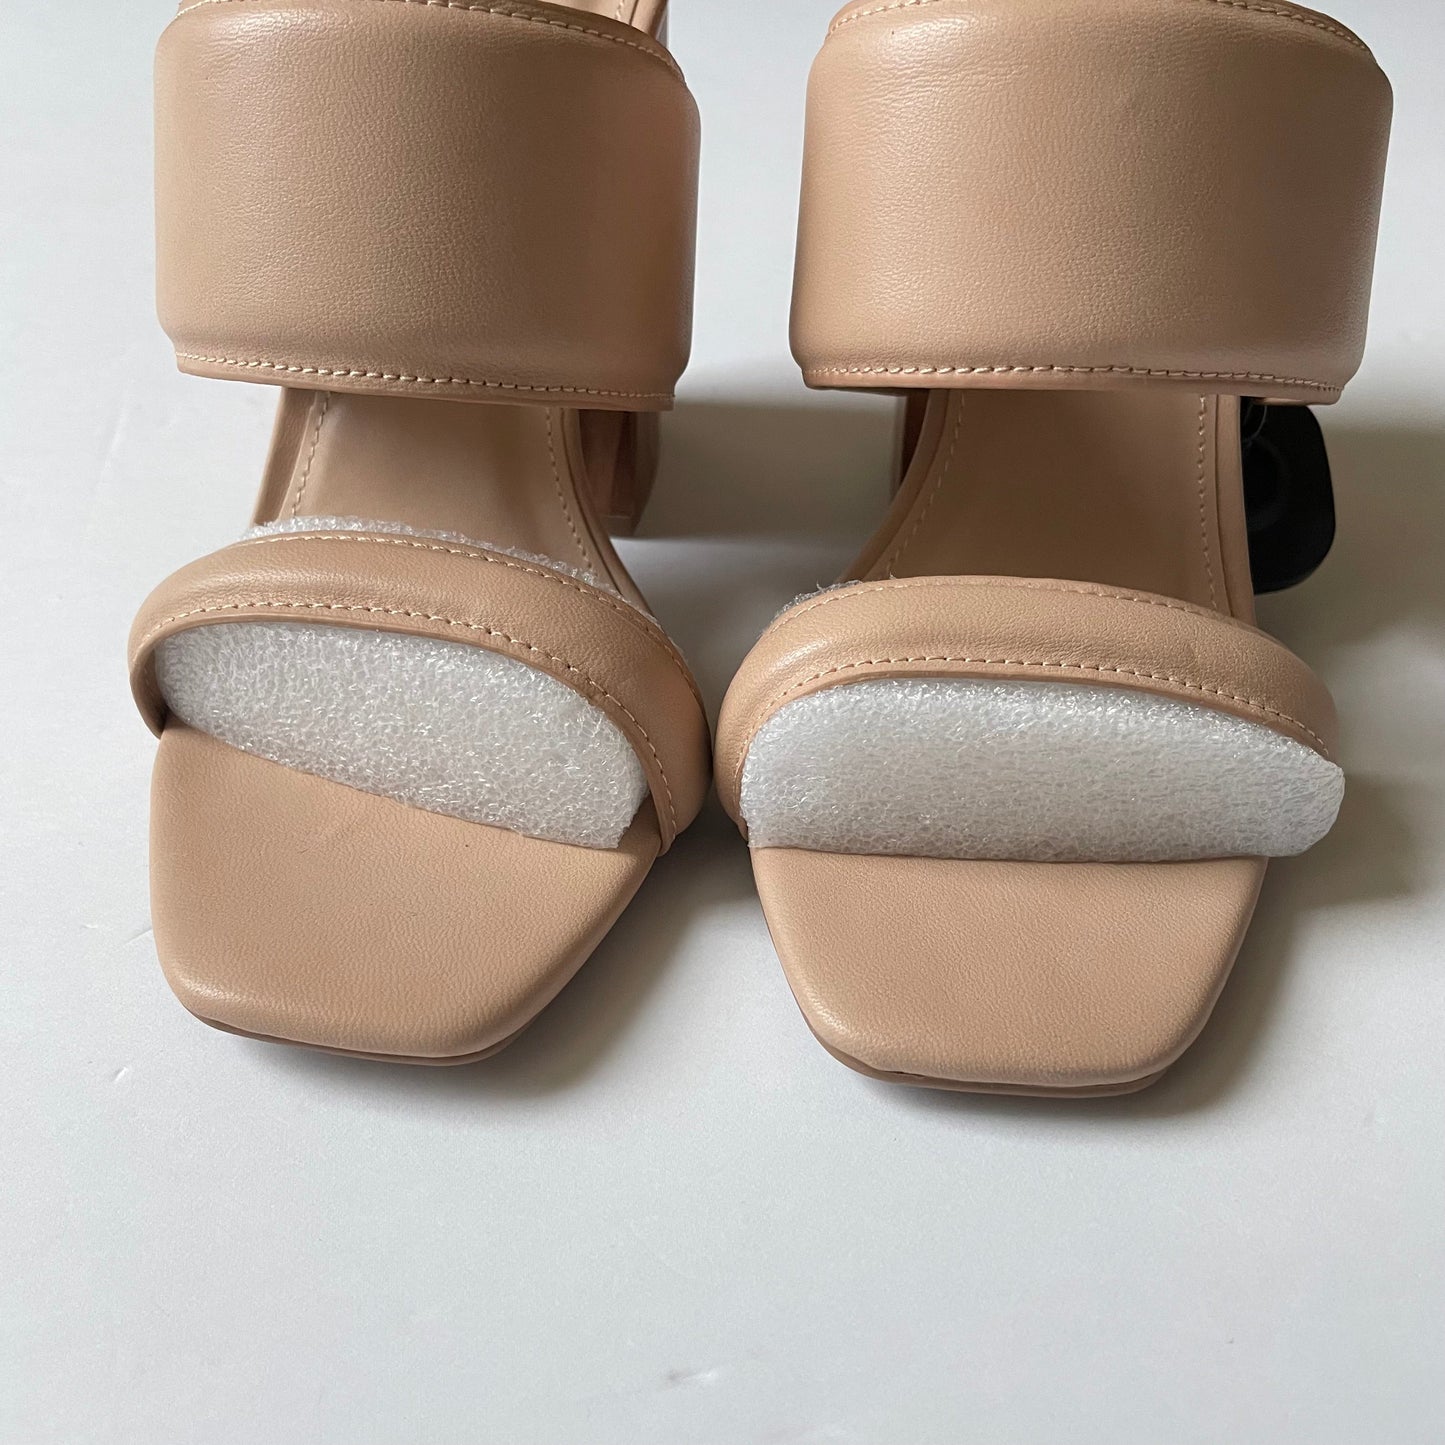 Tan Shoes Heels Block Qupid, Size 9